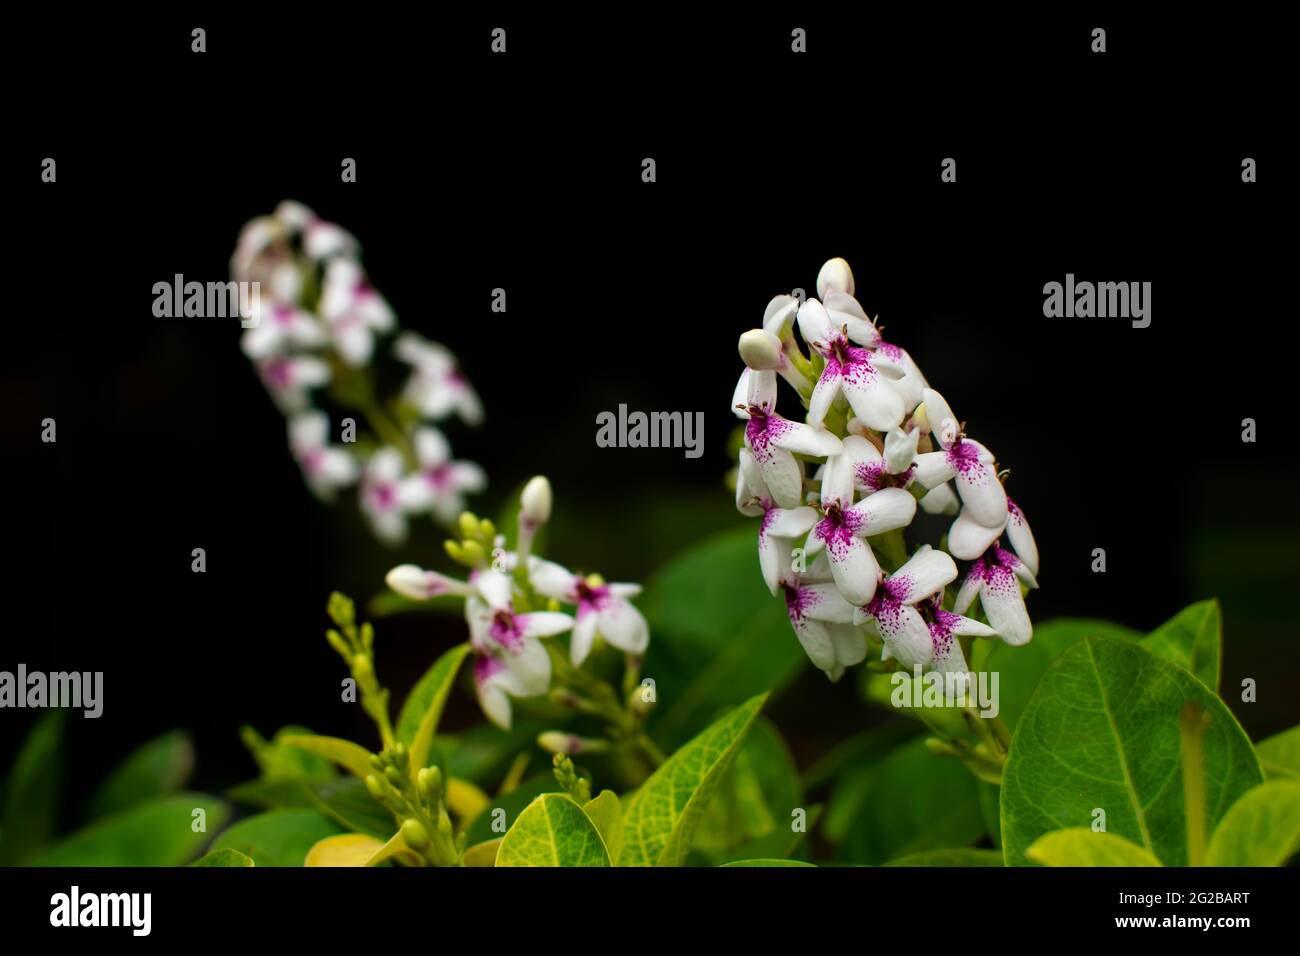 Blüten von Pseuderanthemum carruthersii auch als buntes Falsches Eranthemum bekannt. Selektiver Fokus verwendet. Stockfoto